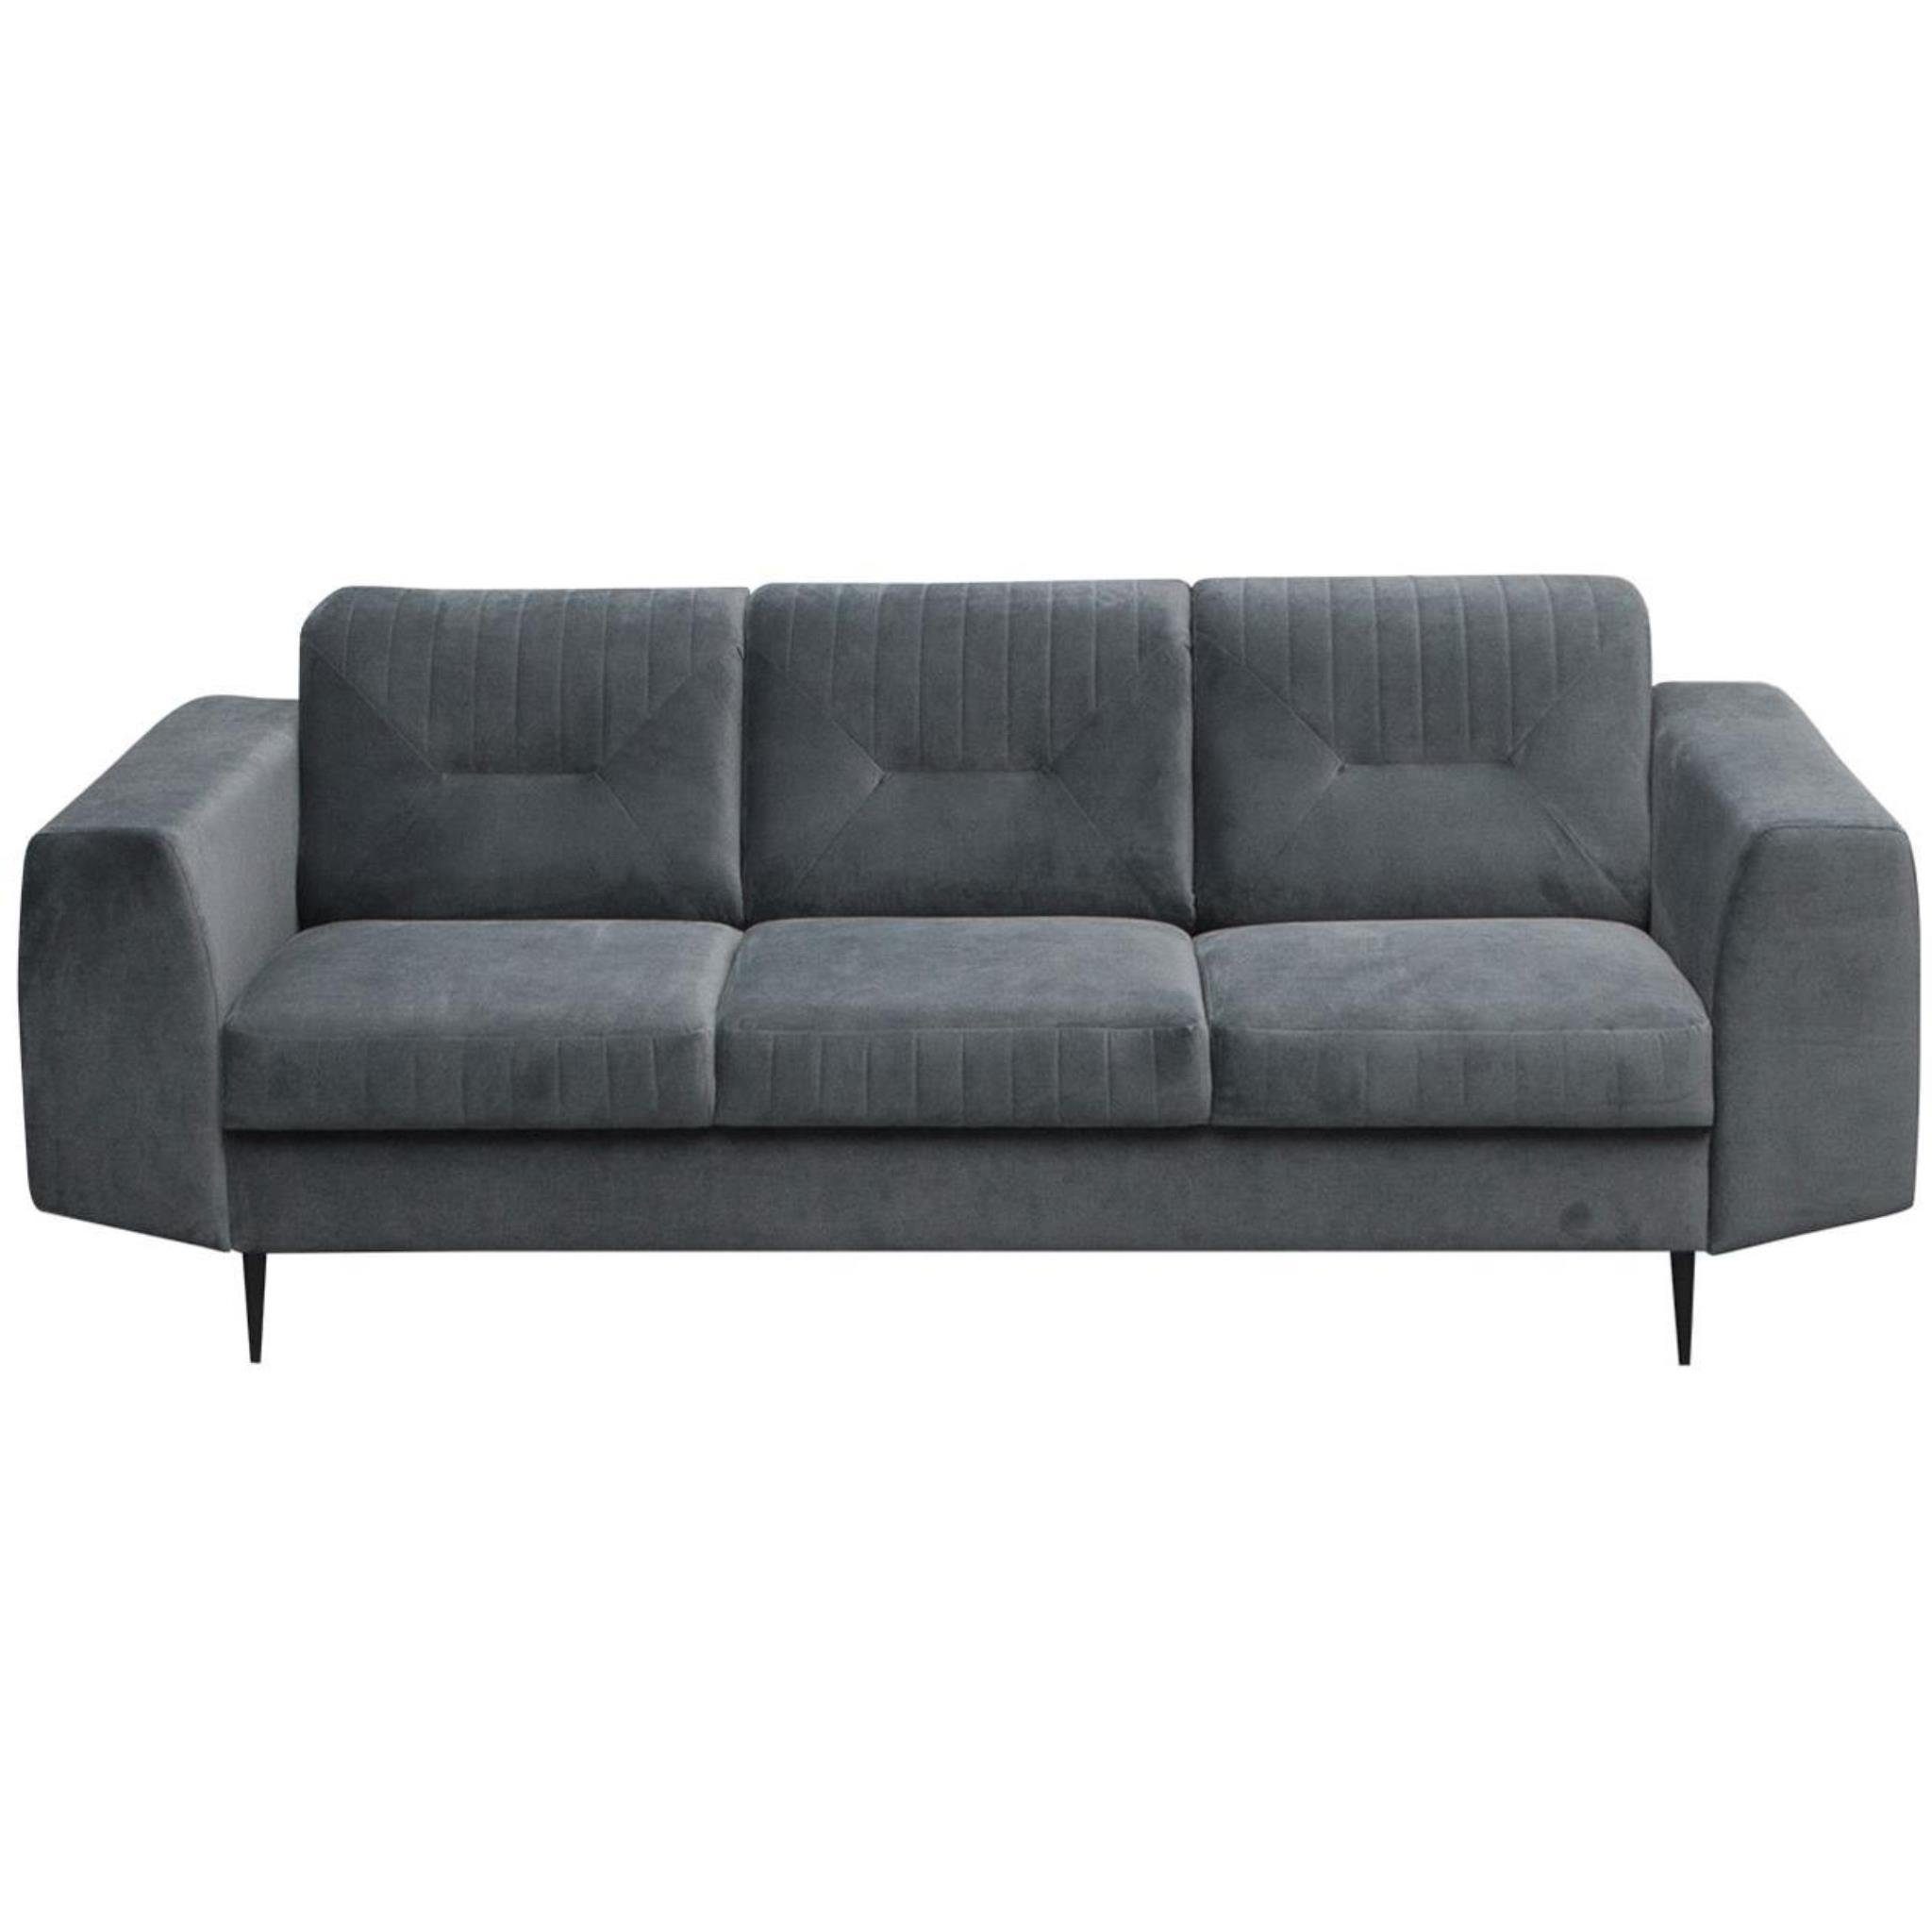 Beautysofa Polstergarnitur VENEZIA, (Sessel 2-Sitzer (bluvel 3-Sitzer Couchgarnituren + 14) Velours + im Sofa Sofa Design), Metallbeine, aus modernes Grau mit